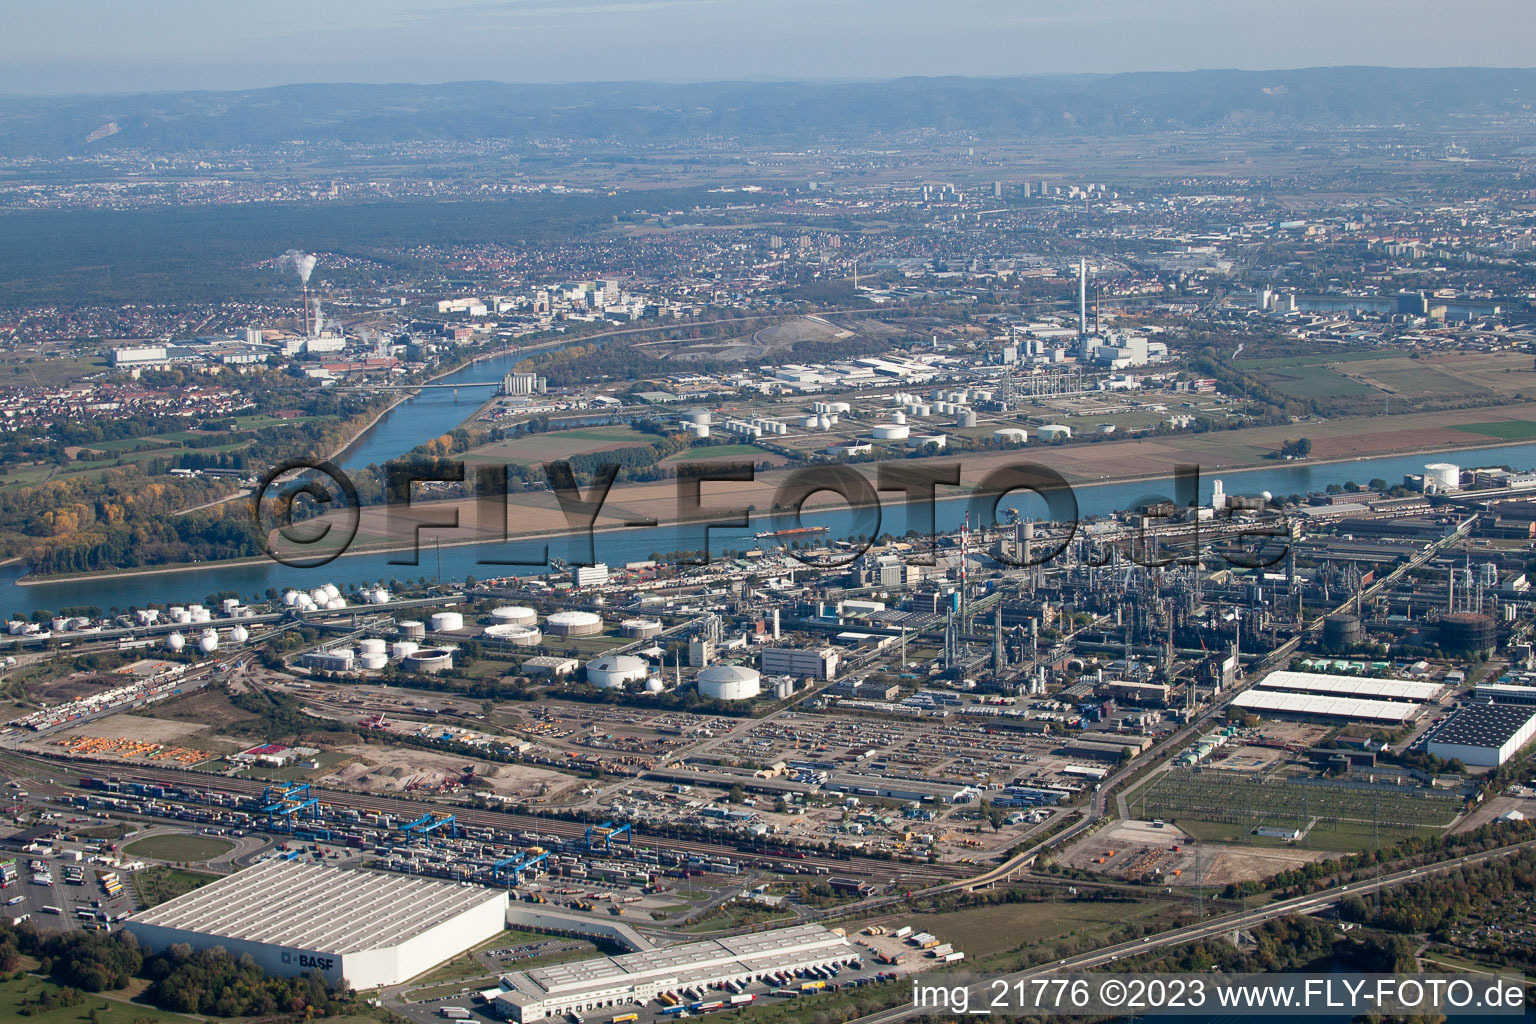 Quartier BASF in Ludwigshafen am Rhein dans le département Rhénanie-Palatinat, Allemagne hors des airs